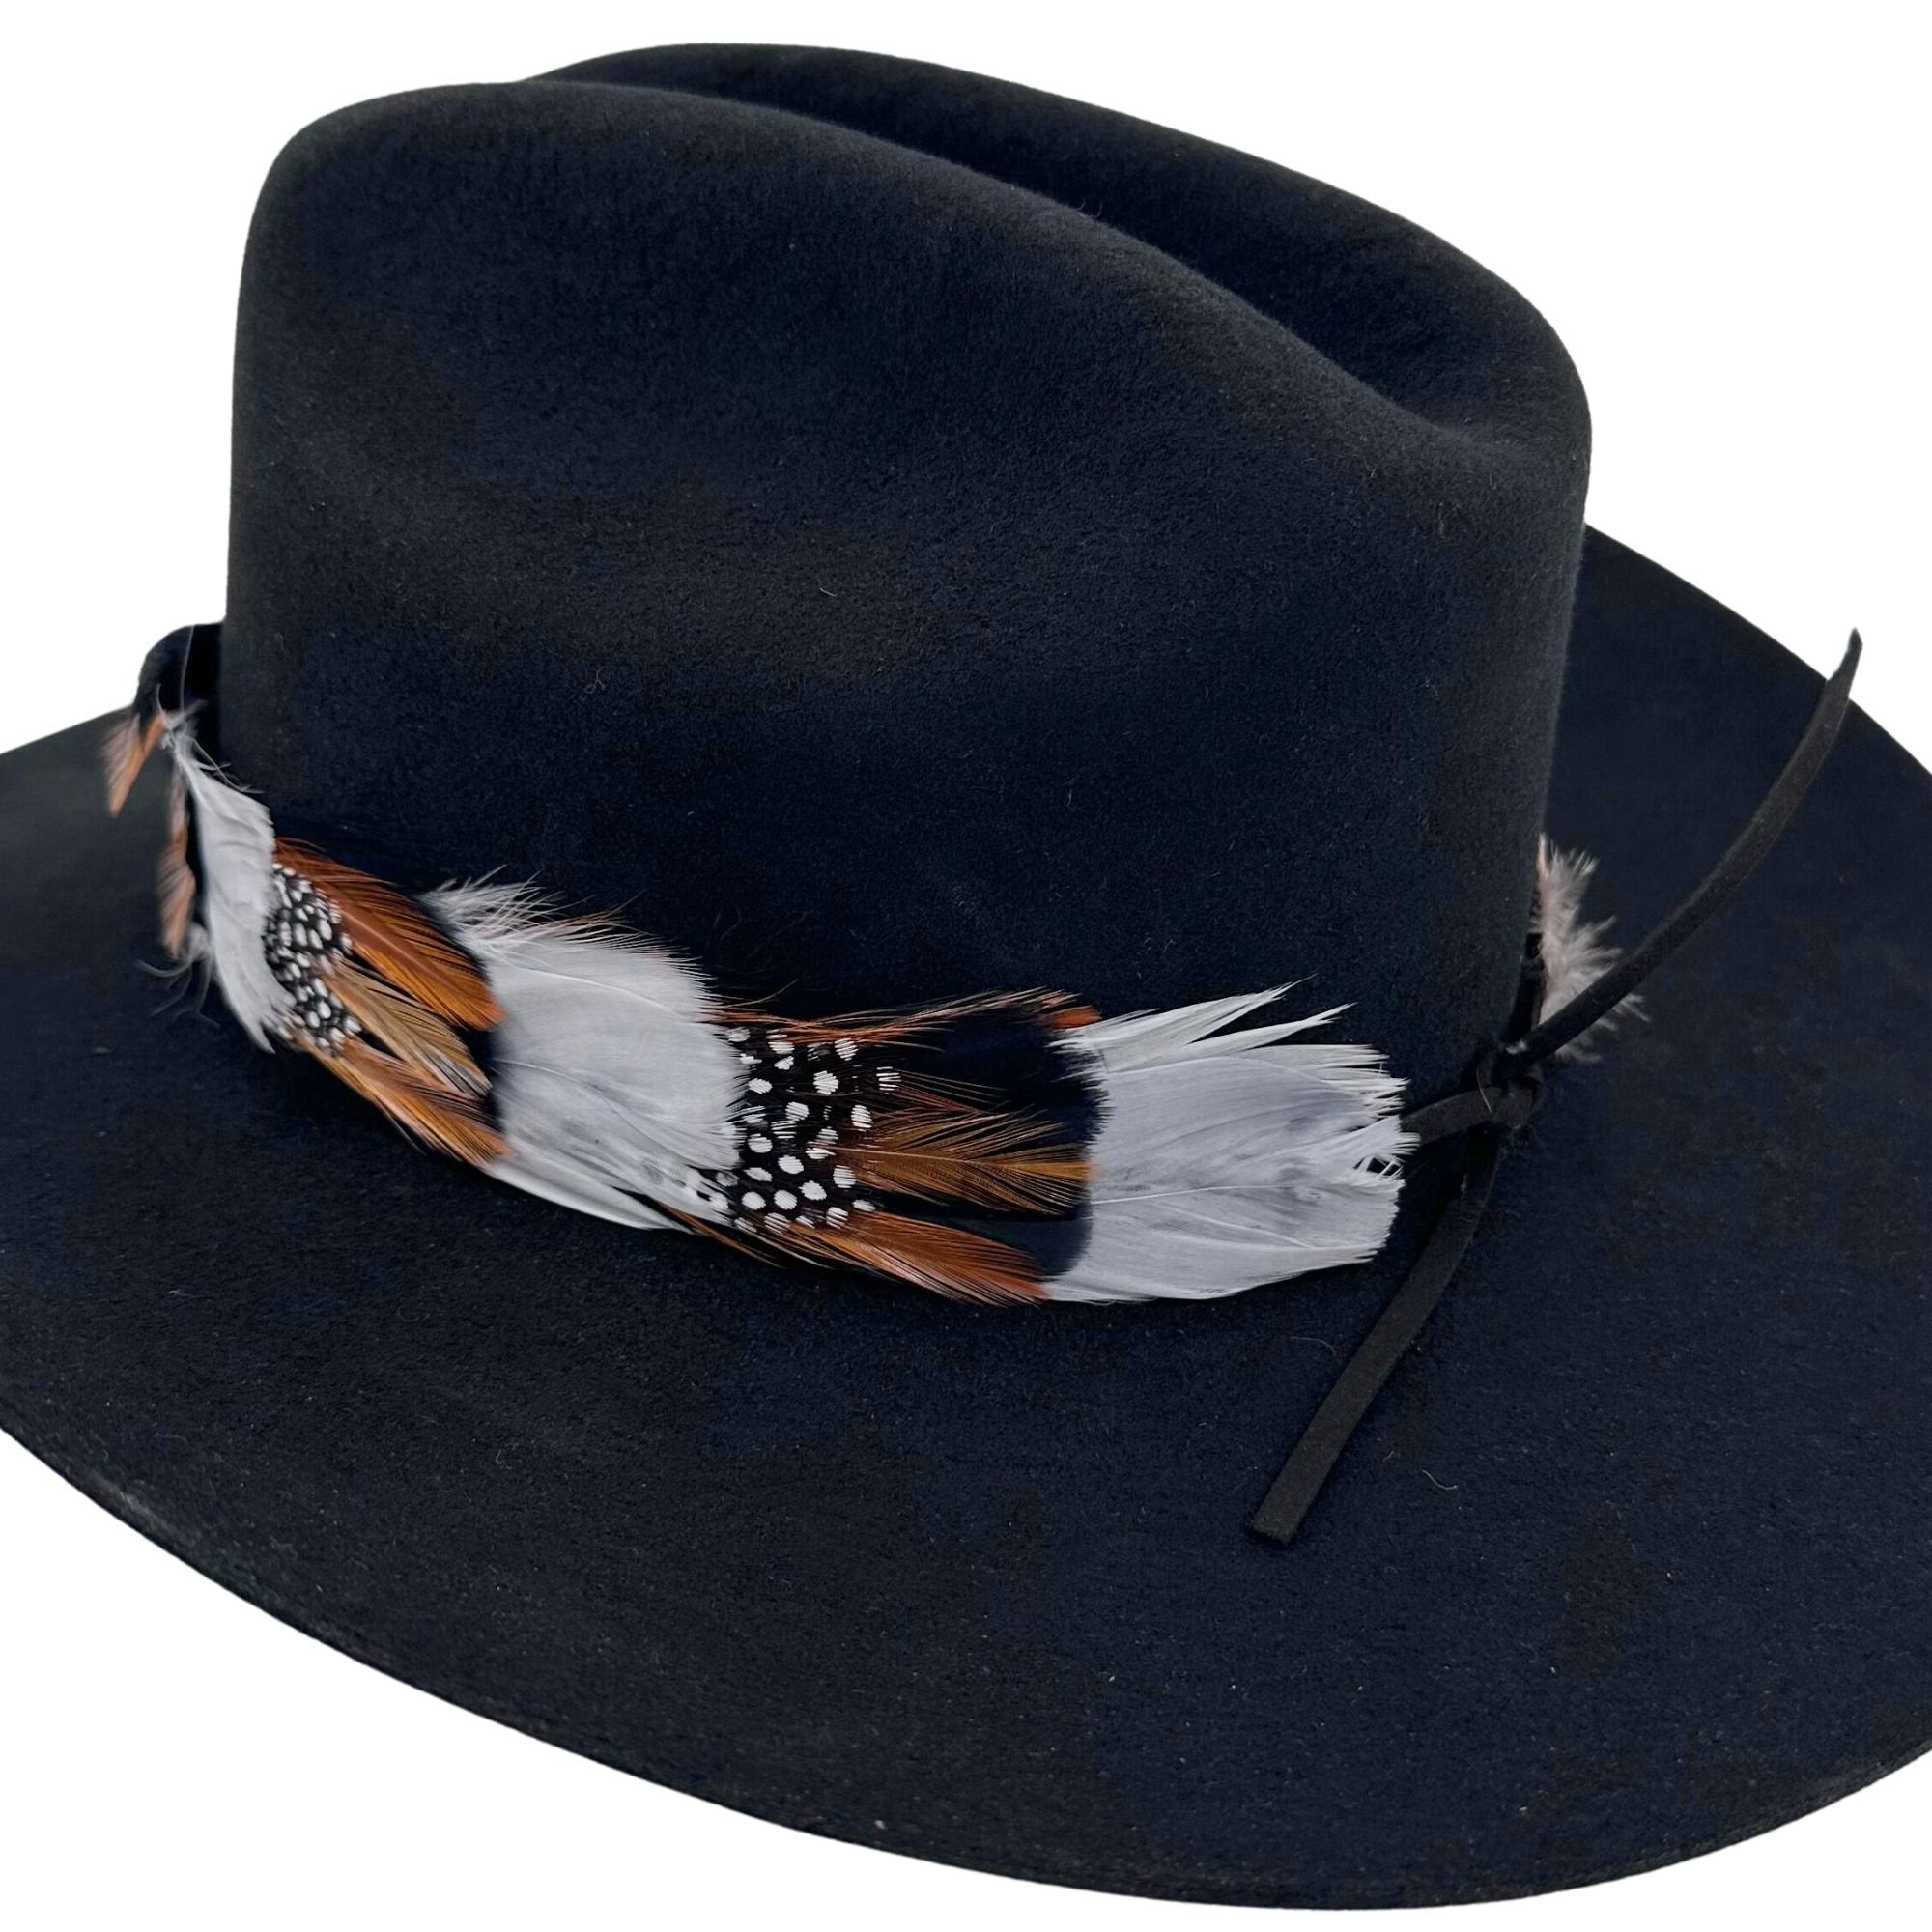 WESTERN COWBOY Feather Hatband tie for Cowboy hat - FHB-02